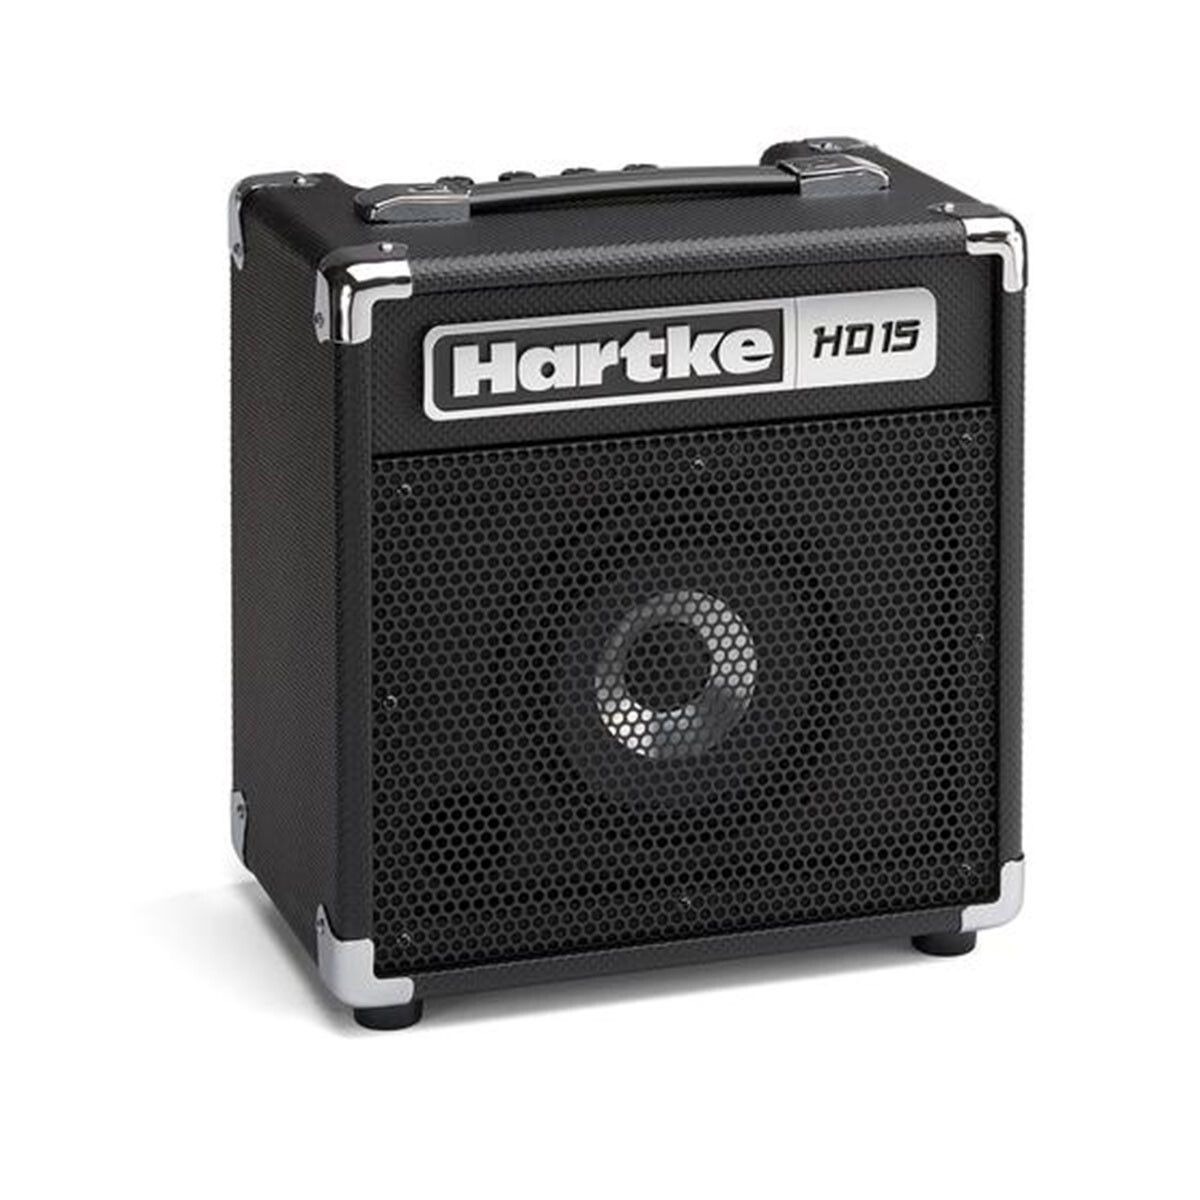 Amplificador Bajo Hartke Hd15 Hydrive 15w 6.5"" 